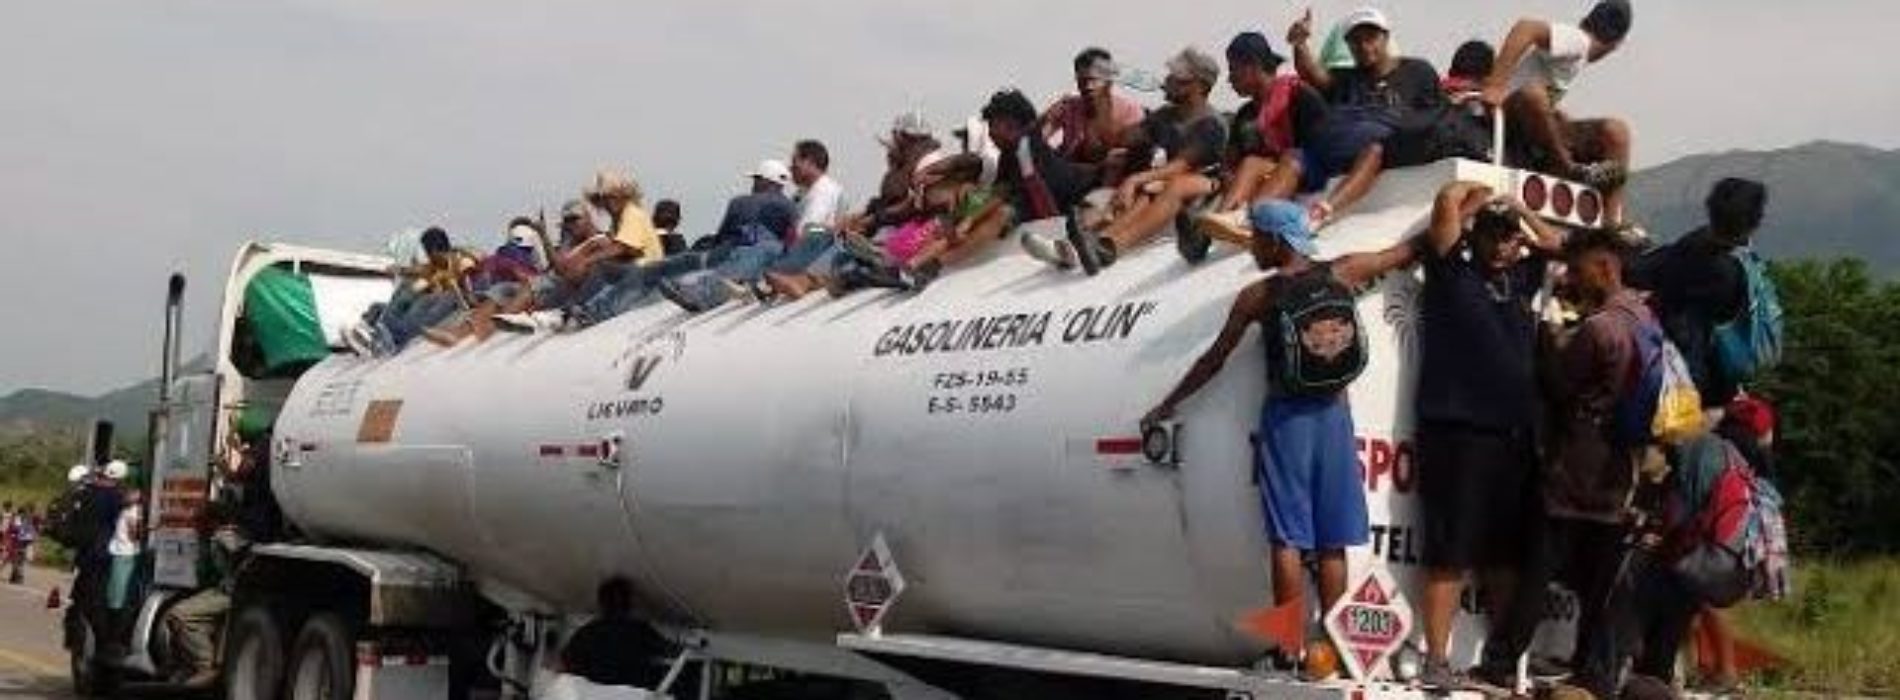 Aumenta la caravana de migrantes; nace bebé en
Juchitán